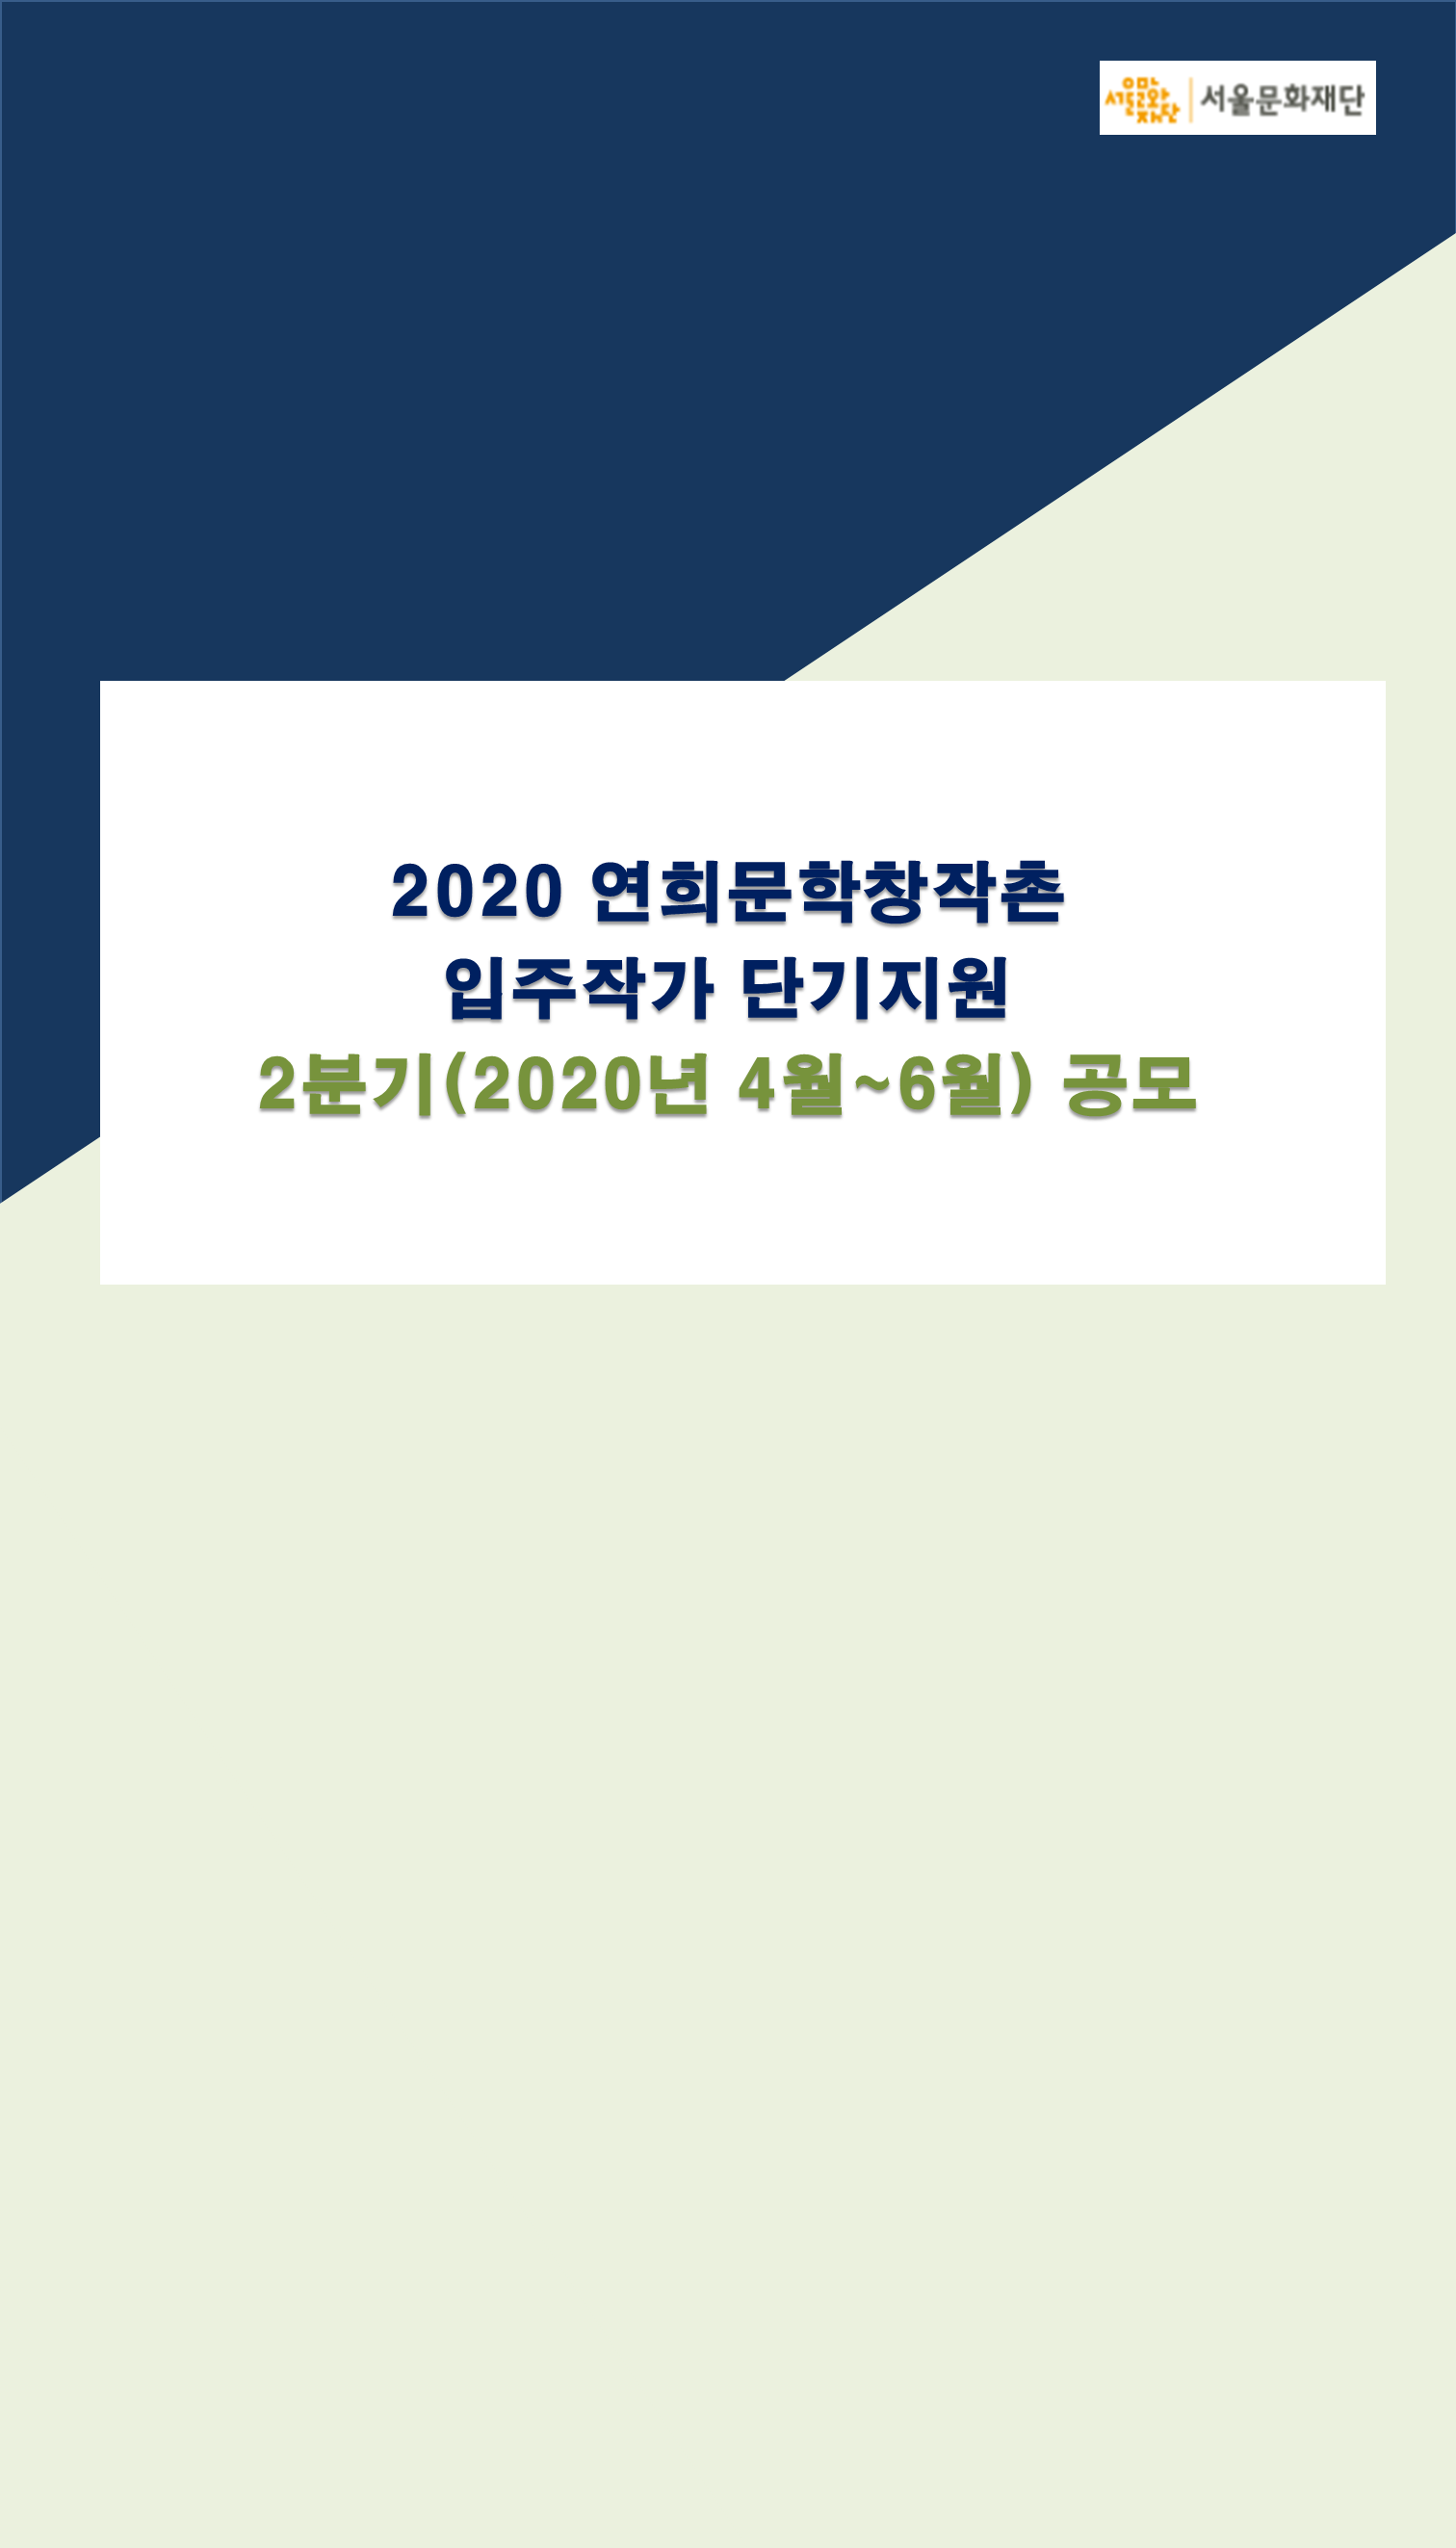 2020 연희문학창작촌 입주작가 2분기 단기지원 공모